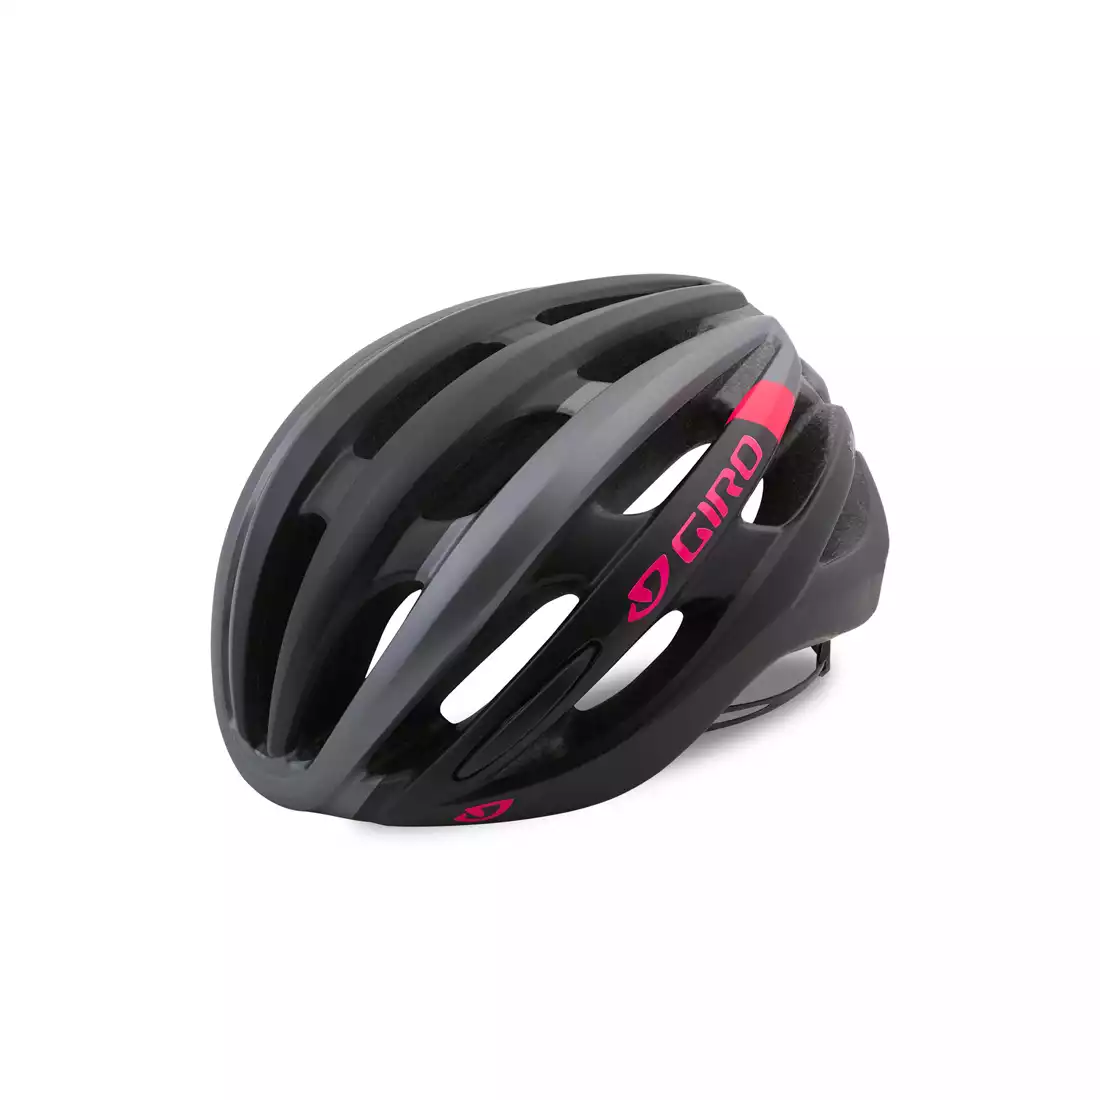 GIRO SAGA - damski kask rowerowy czarno-szaro-różowy